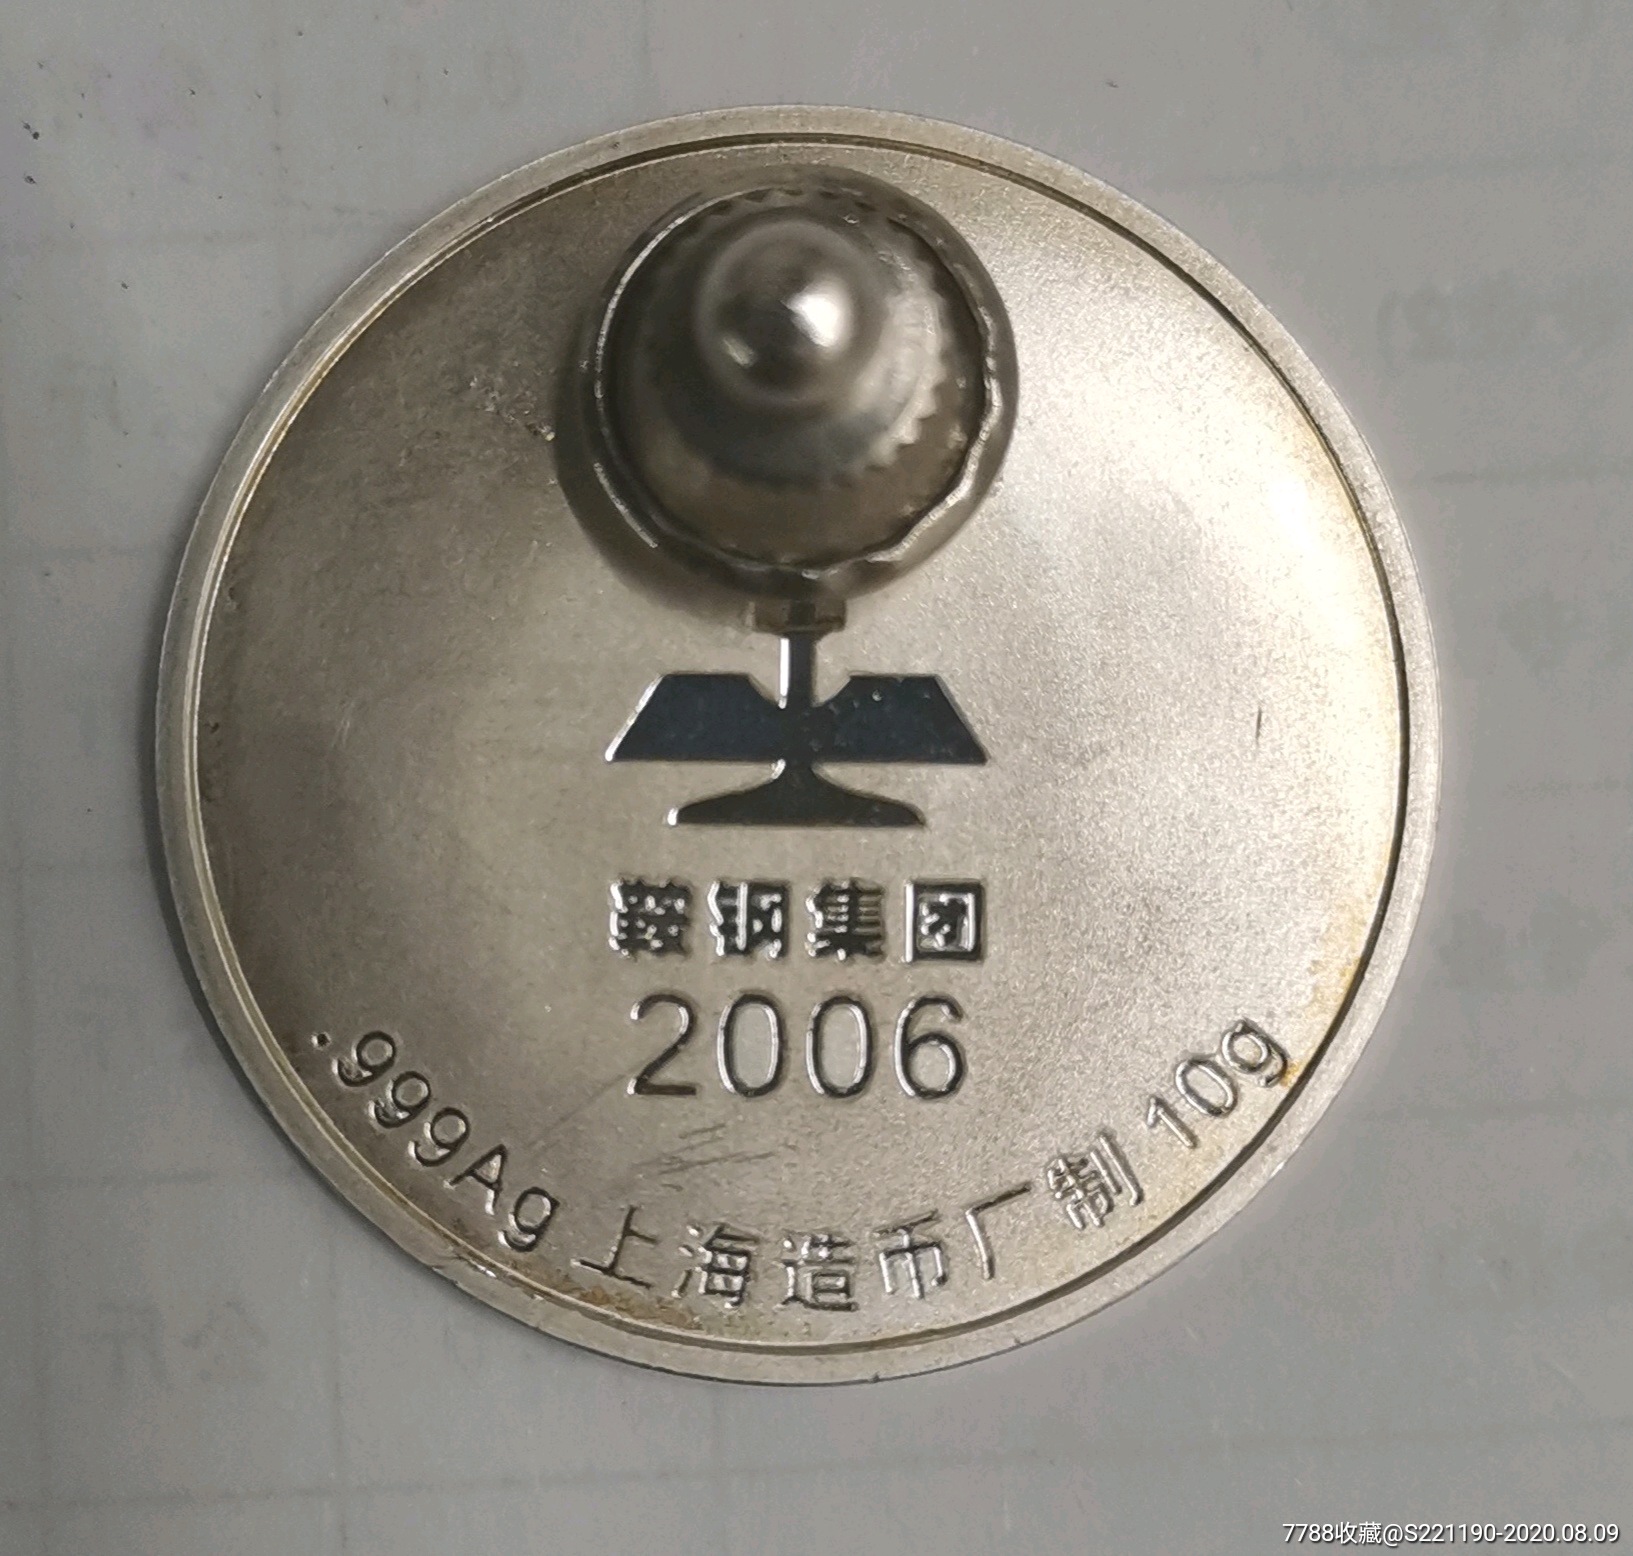 鞍钢集团纪念银章(上海造币厂制)